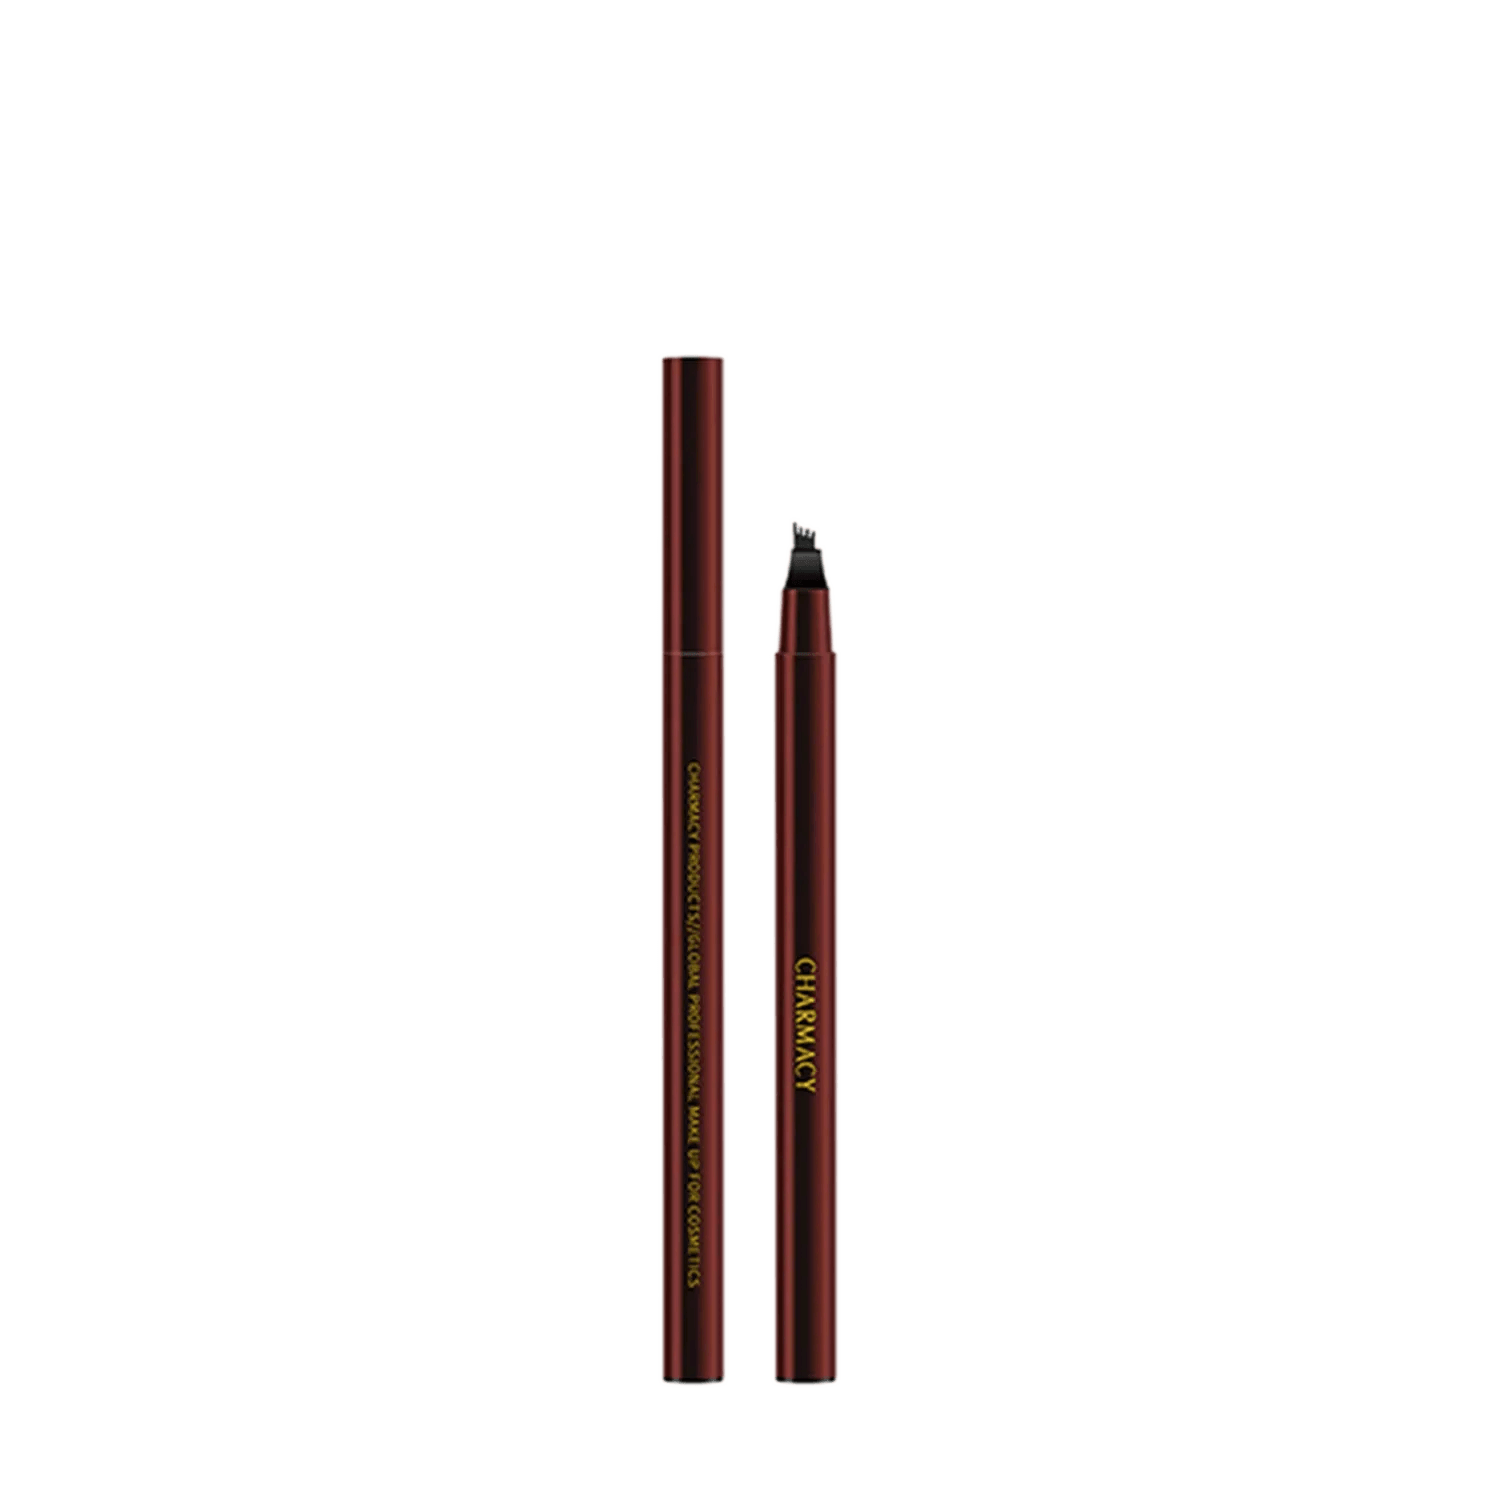 Charmacy Milano | Charmacy Milano Ultra Thin Stroke Pen - Black No. 01 - (0.6ml)